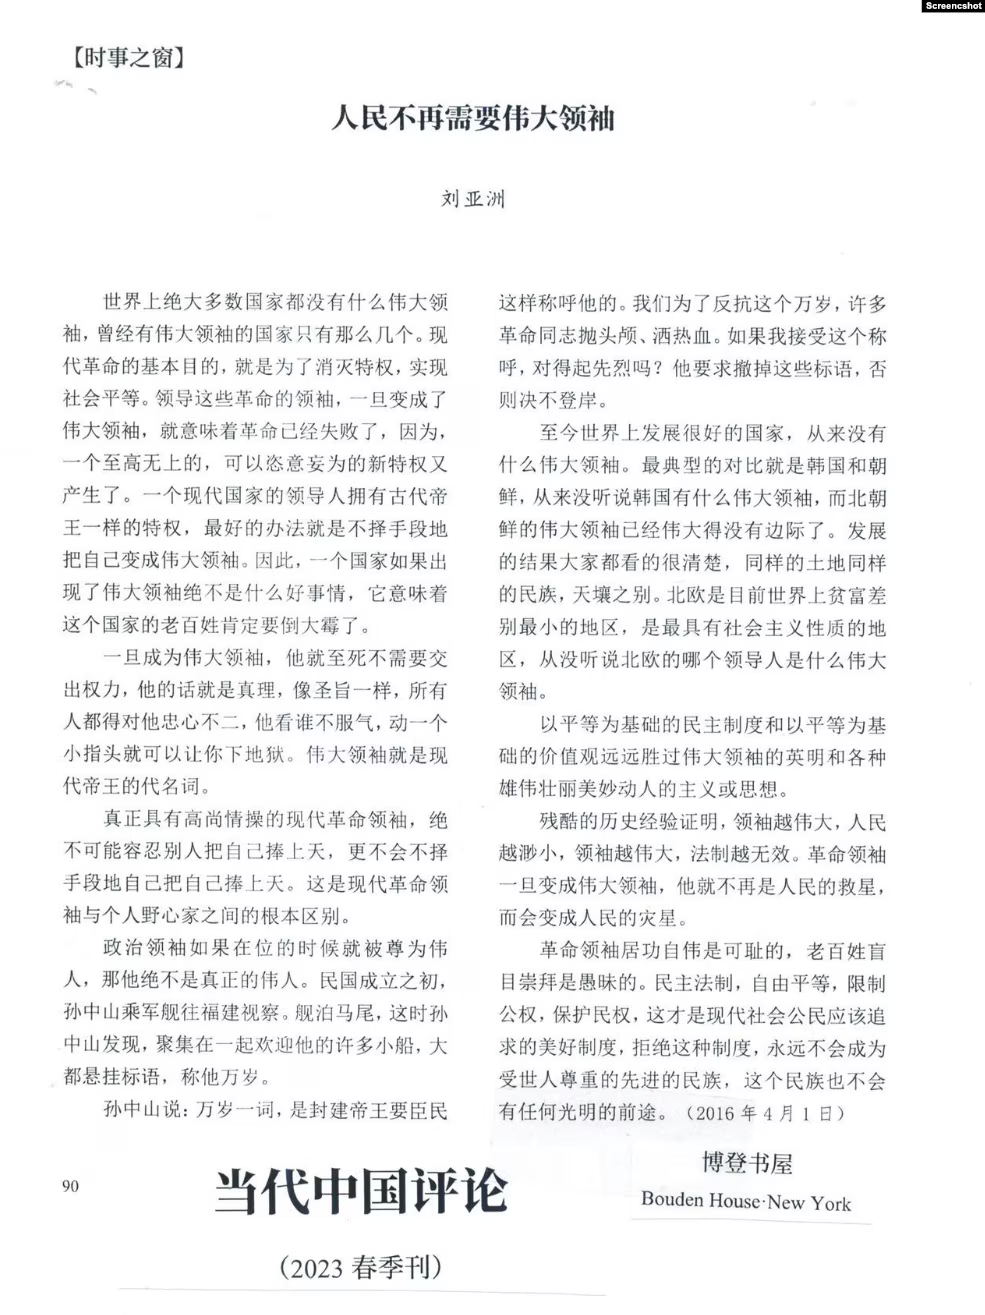 当代中国评论季刊登载刘亚洲2016年4月发表的反个人崇拜文章 （取自X网友柳梢青@Ming_jin网络截图） 